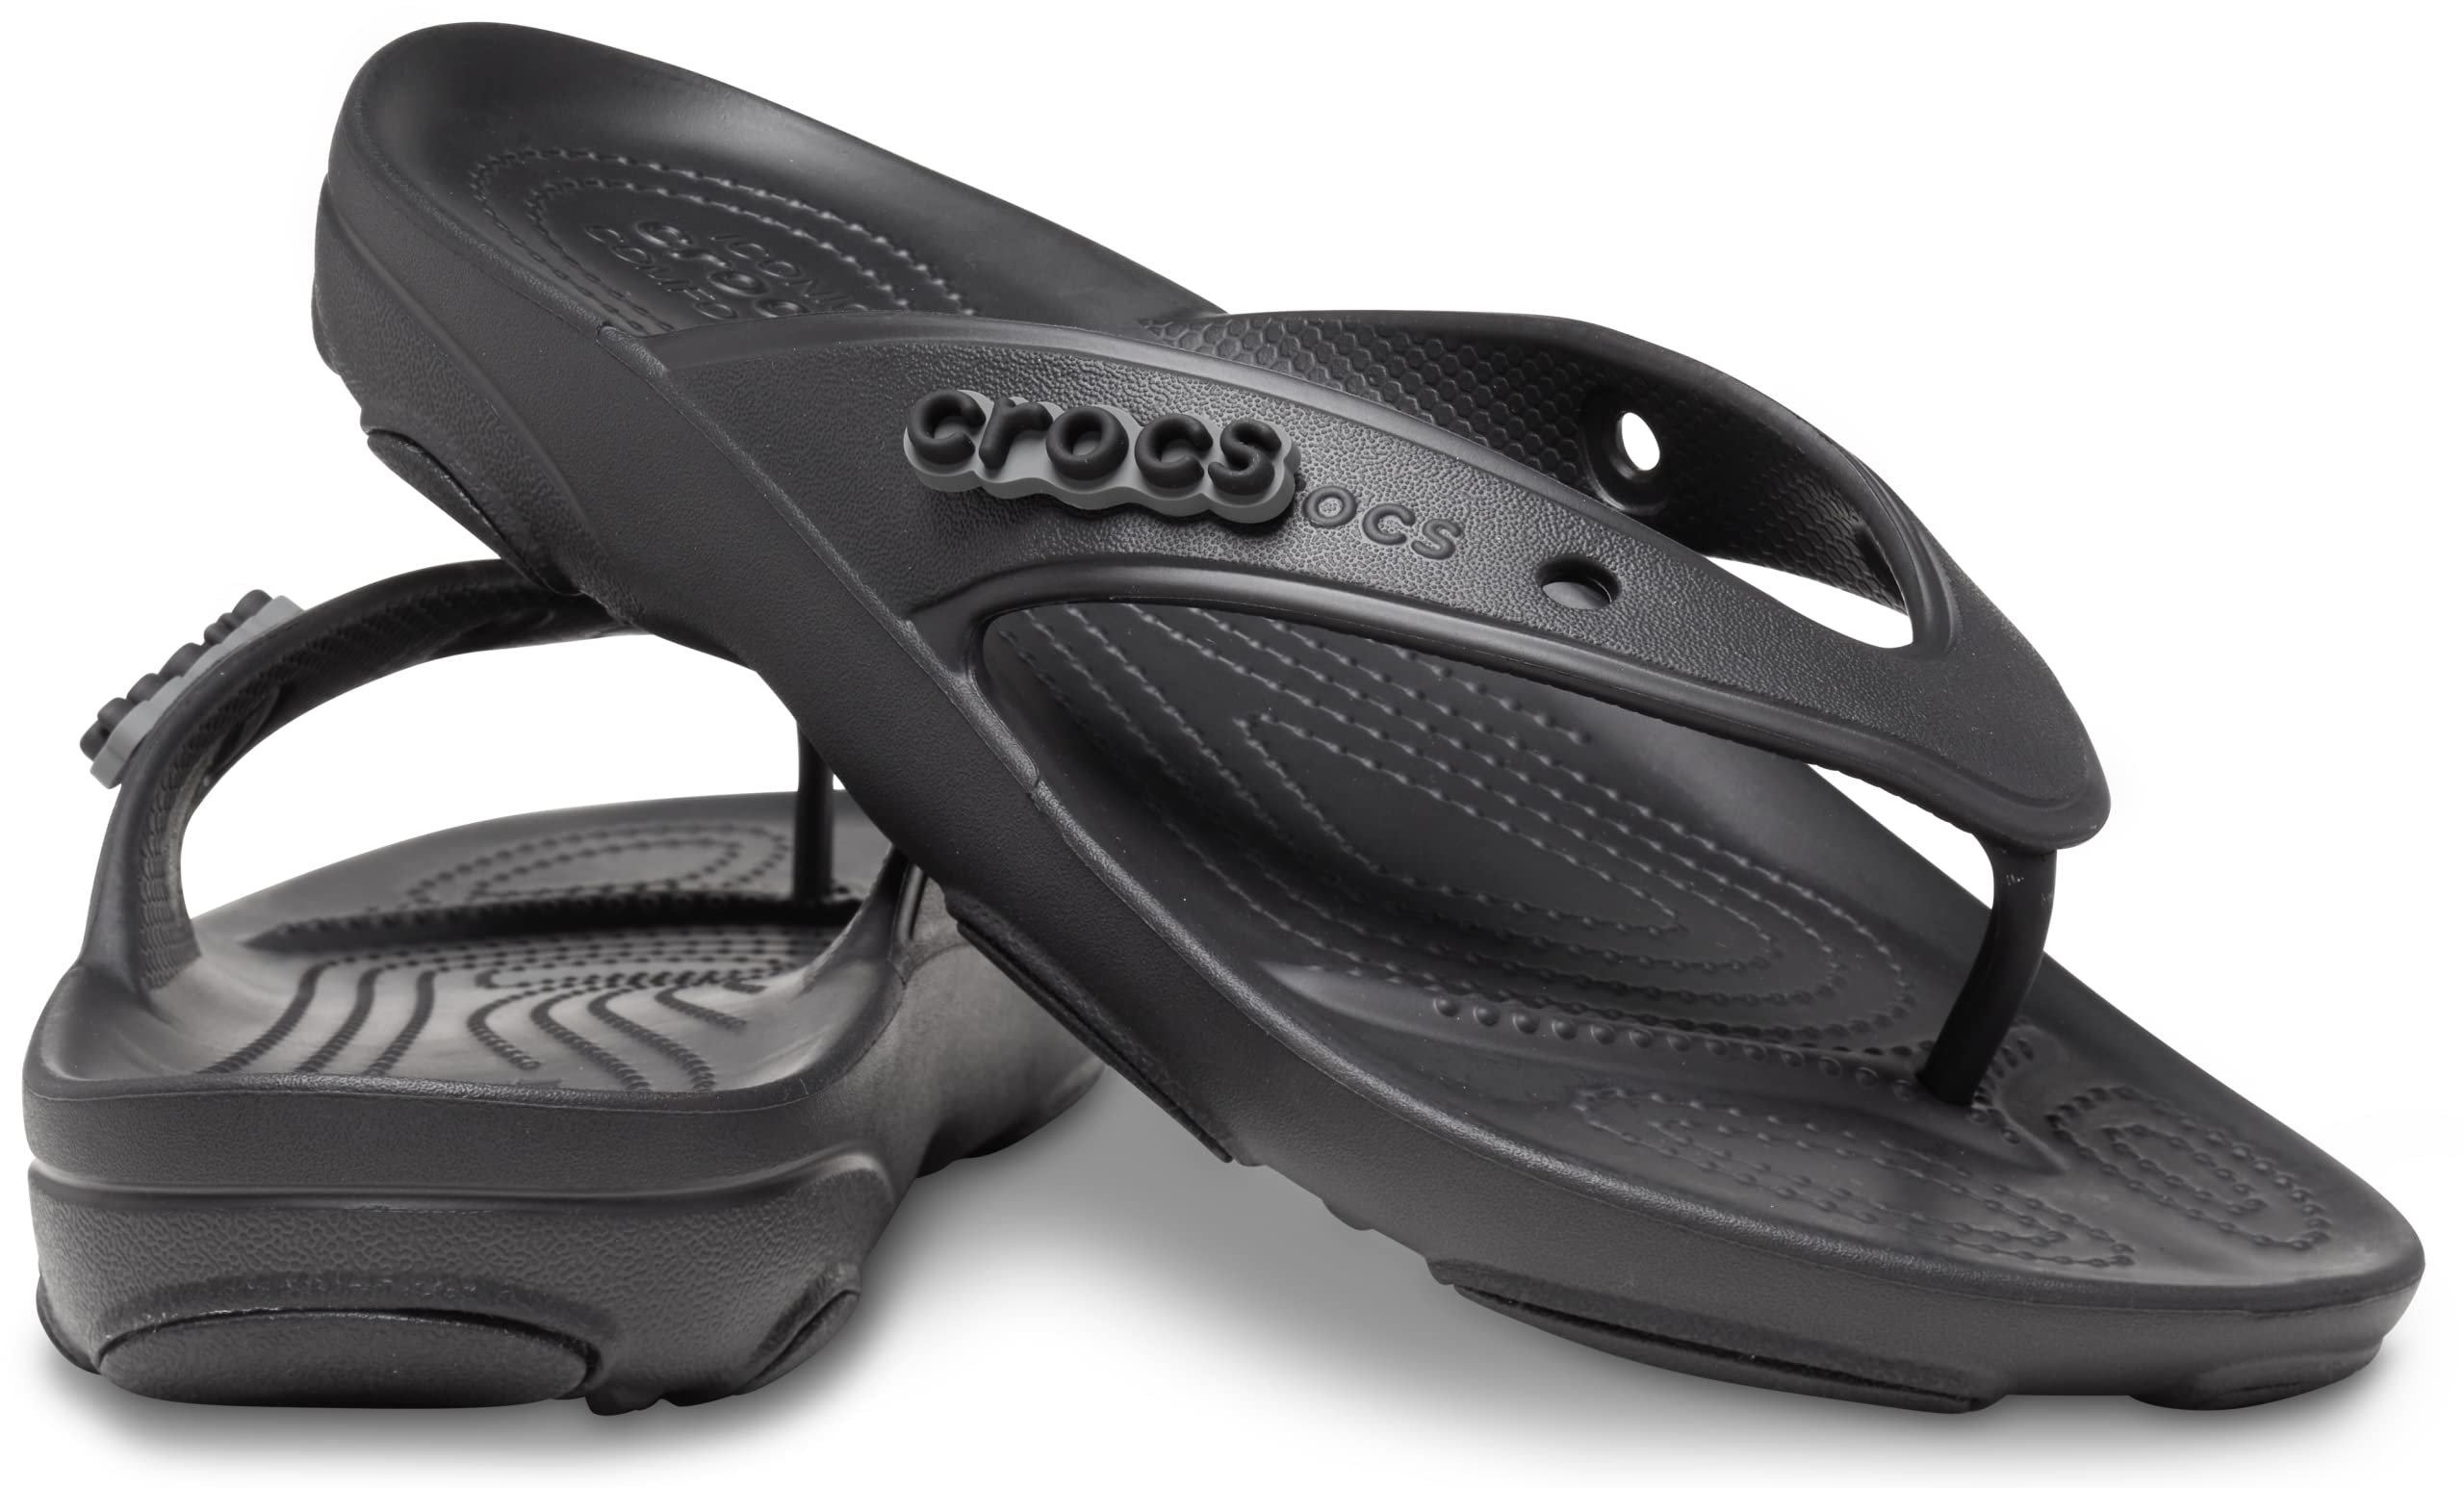 Crocs Unisex-Adult Men's and Women's Classic All Terrain Flip Flops